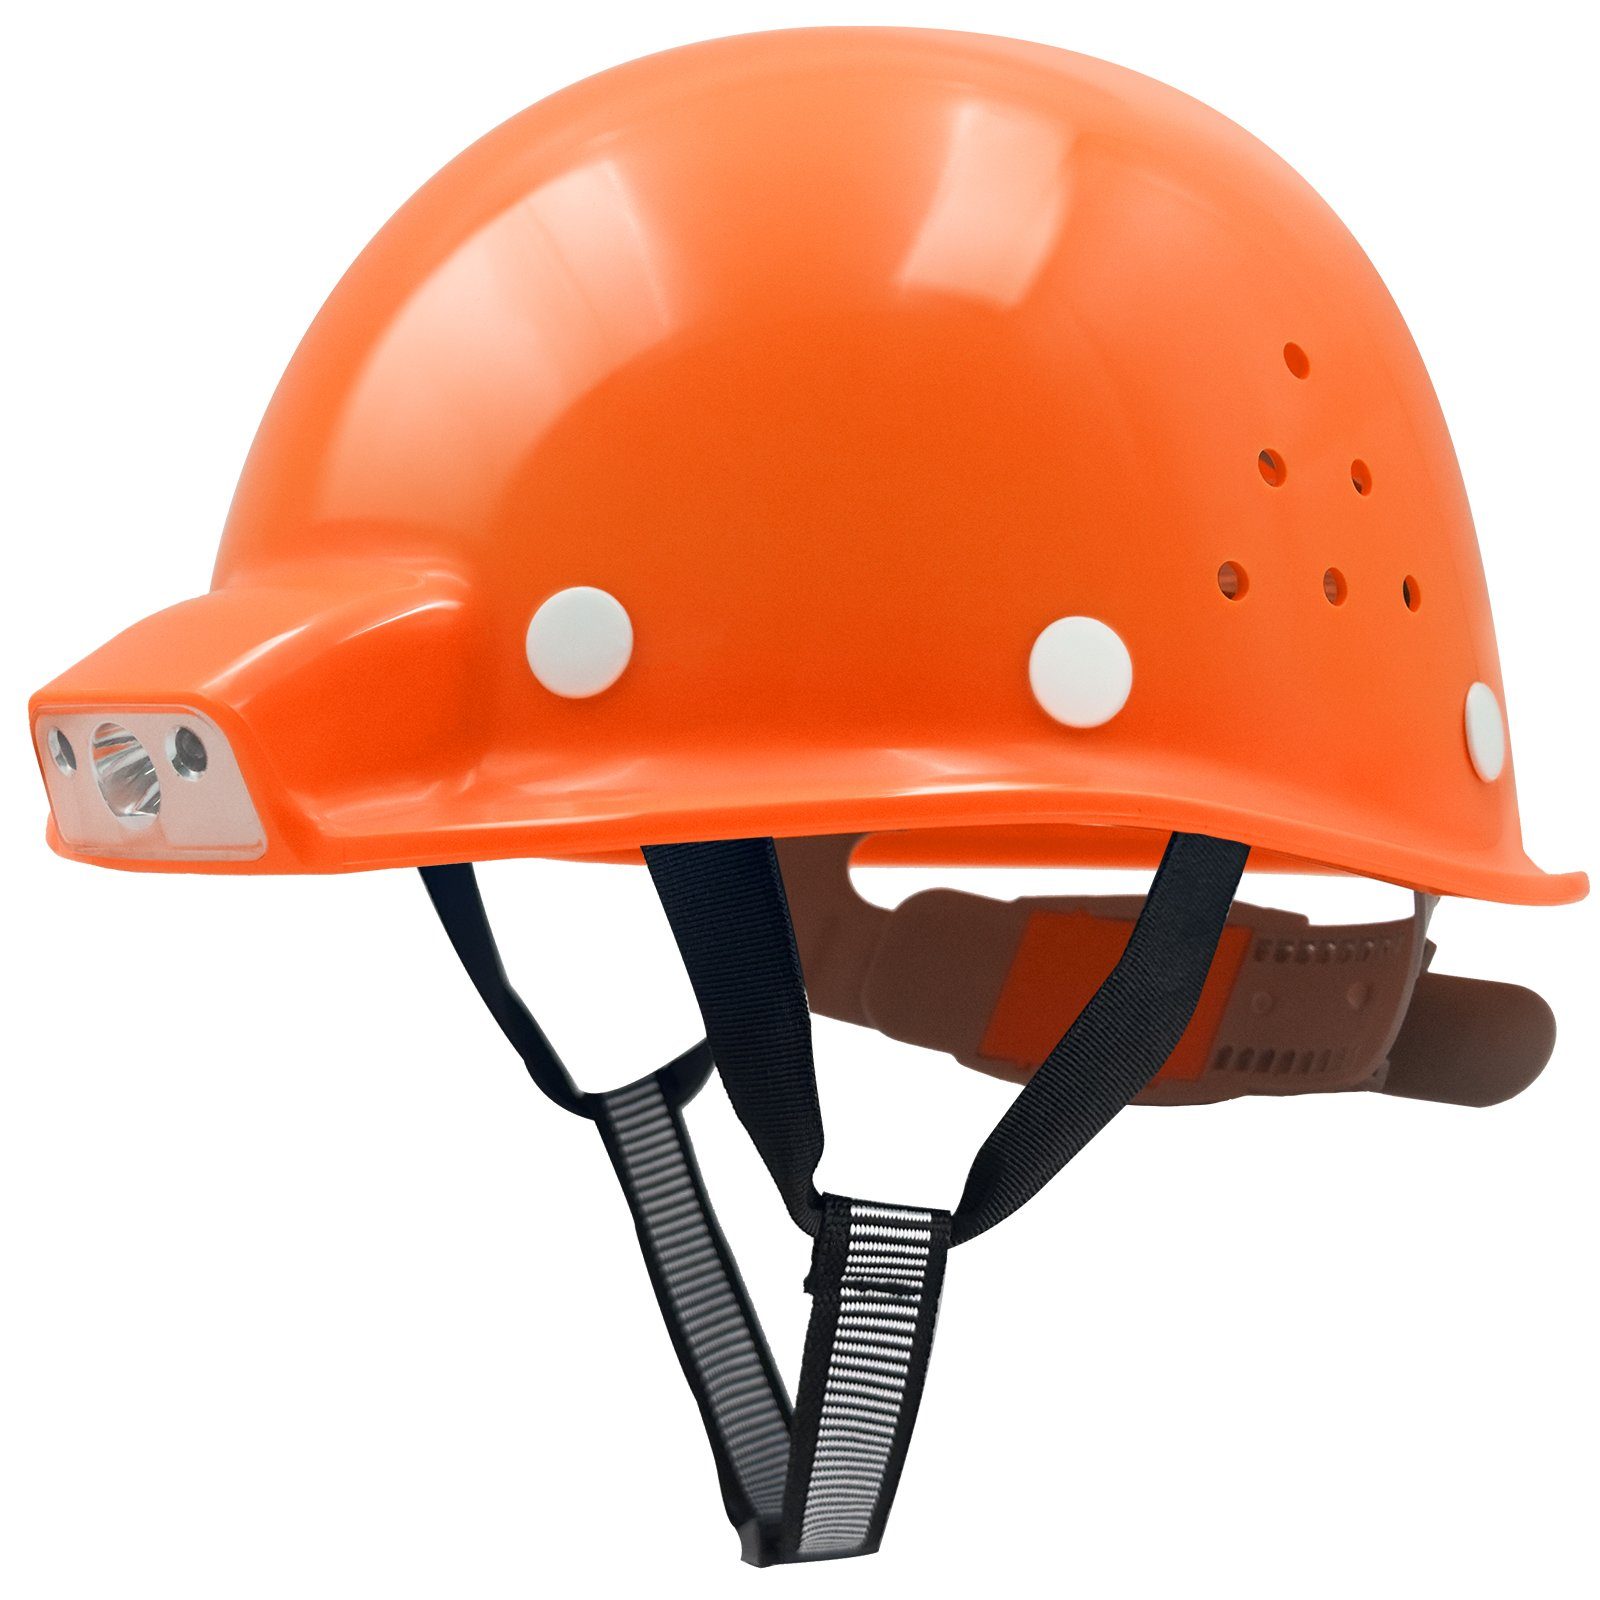 Mustbau Schutzhelm, ABS Bauhelm Arbeitshelm USB-Aufladen-Licht,53-62cm Einstellbar